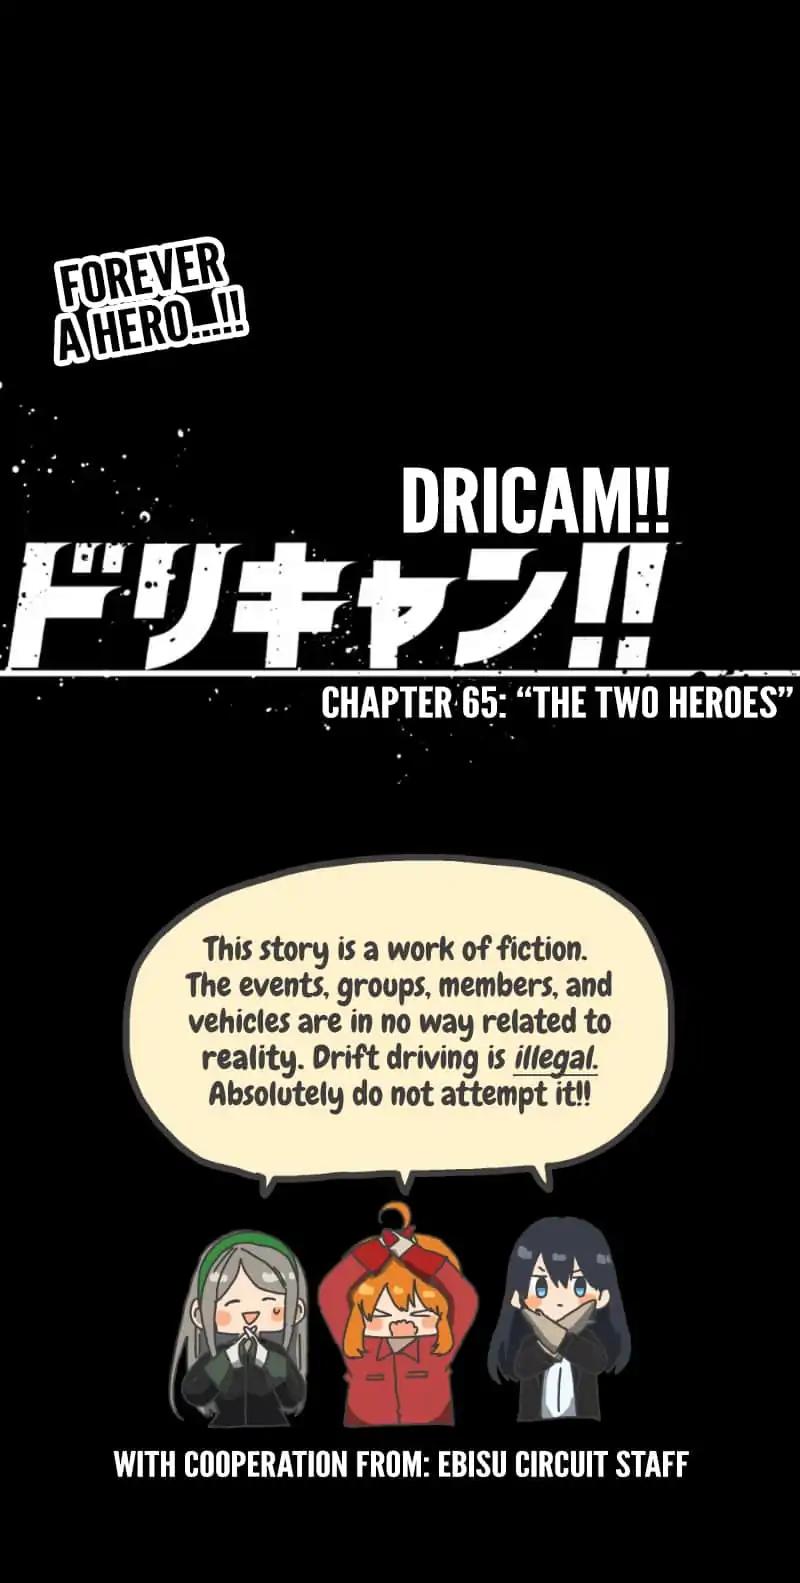 Dricam!! Chapter 65: